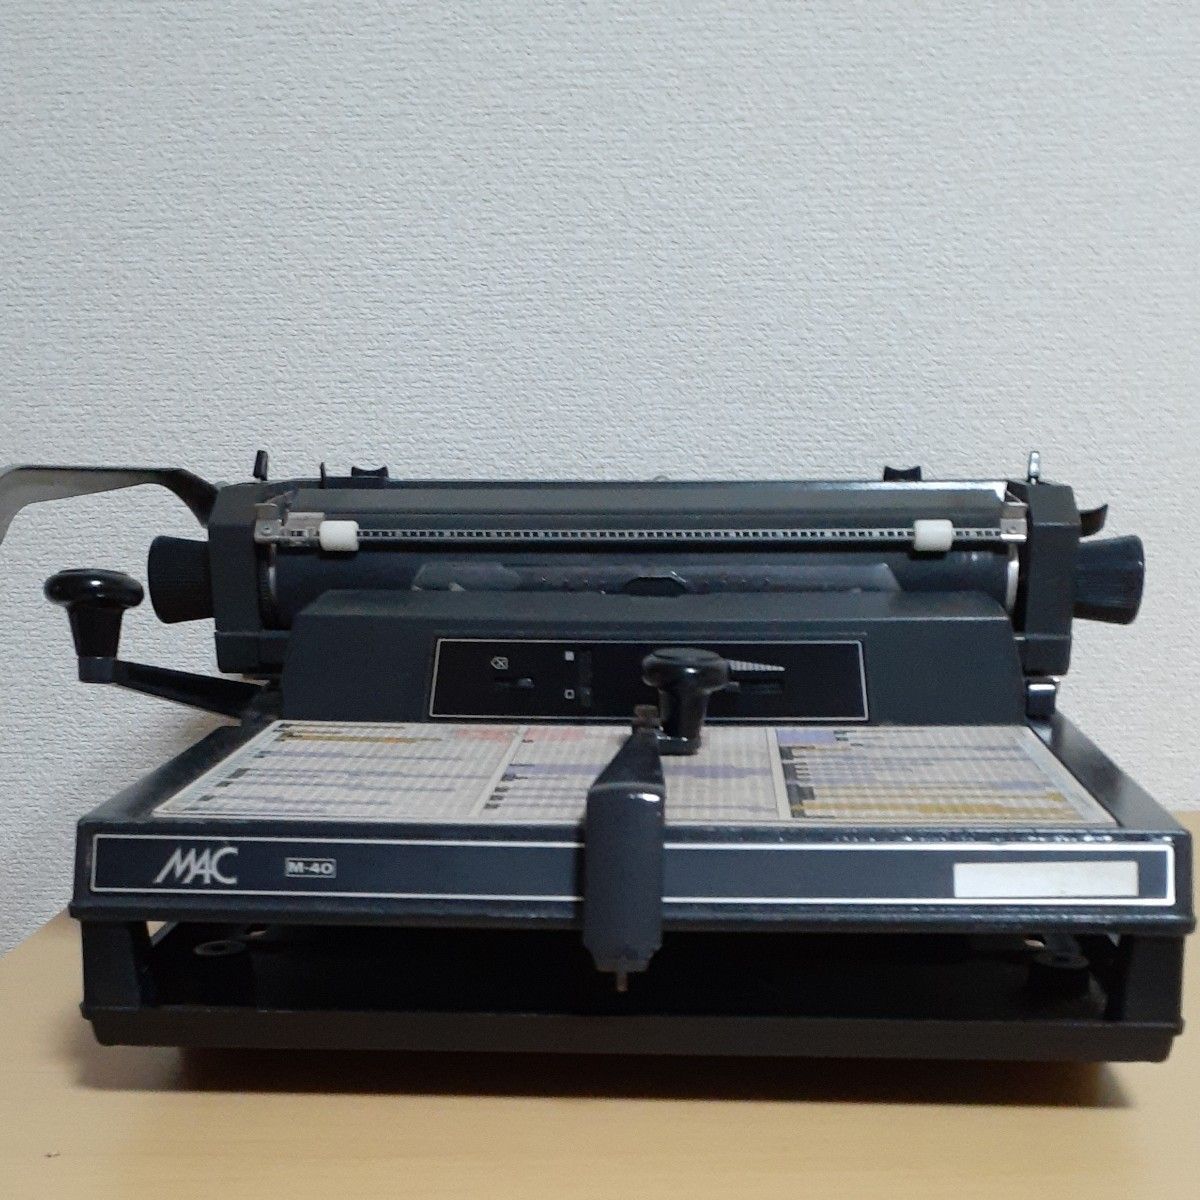 和文タイプライター　MAC M-40【ジャンク品です】送料無料です（ 4月20日までの出品となります）